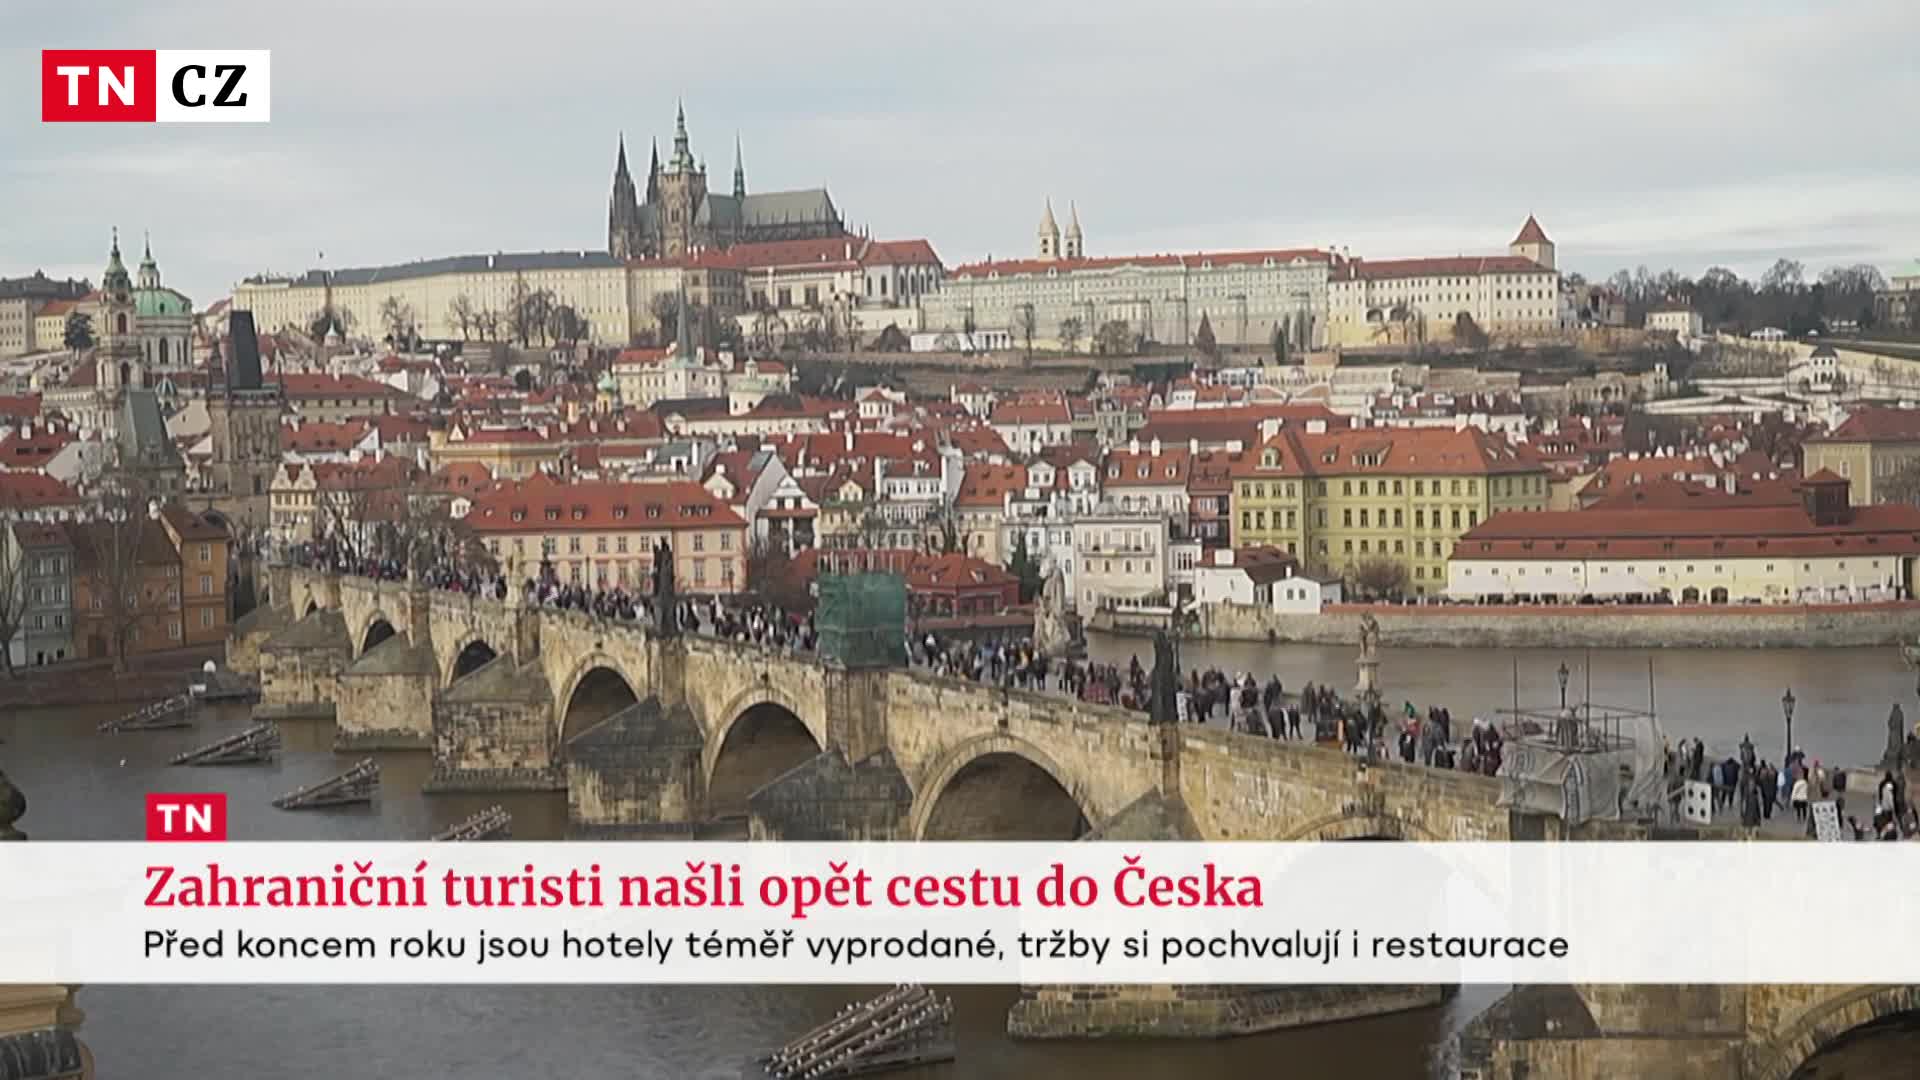 Turisté se vracejí do Česka. Zaplavili Prahu, hotely mají až do Silvestra